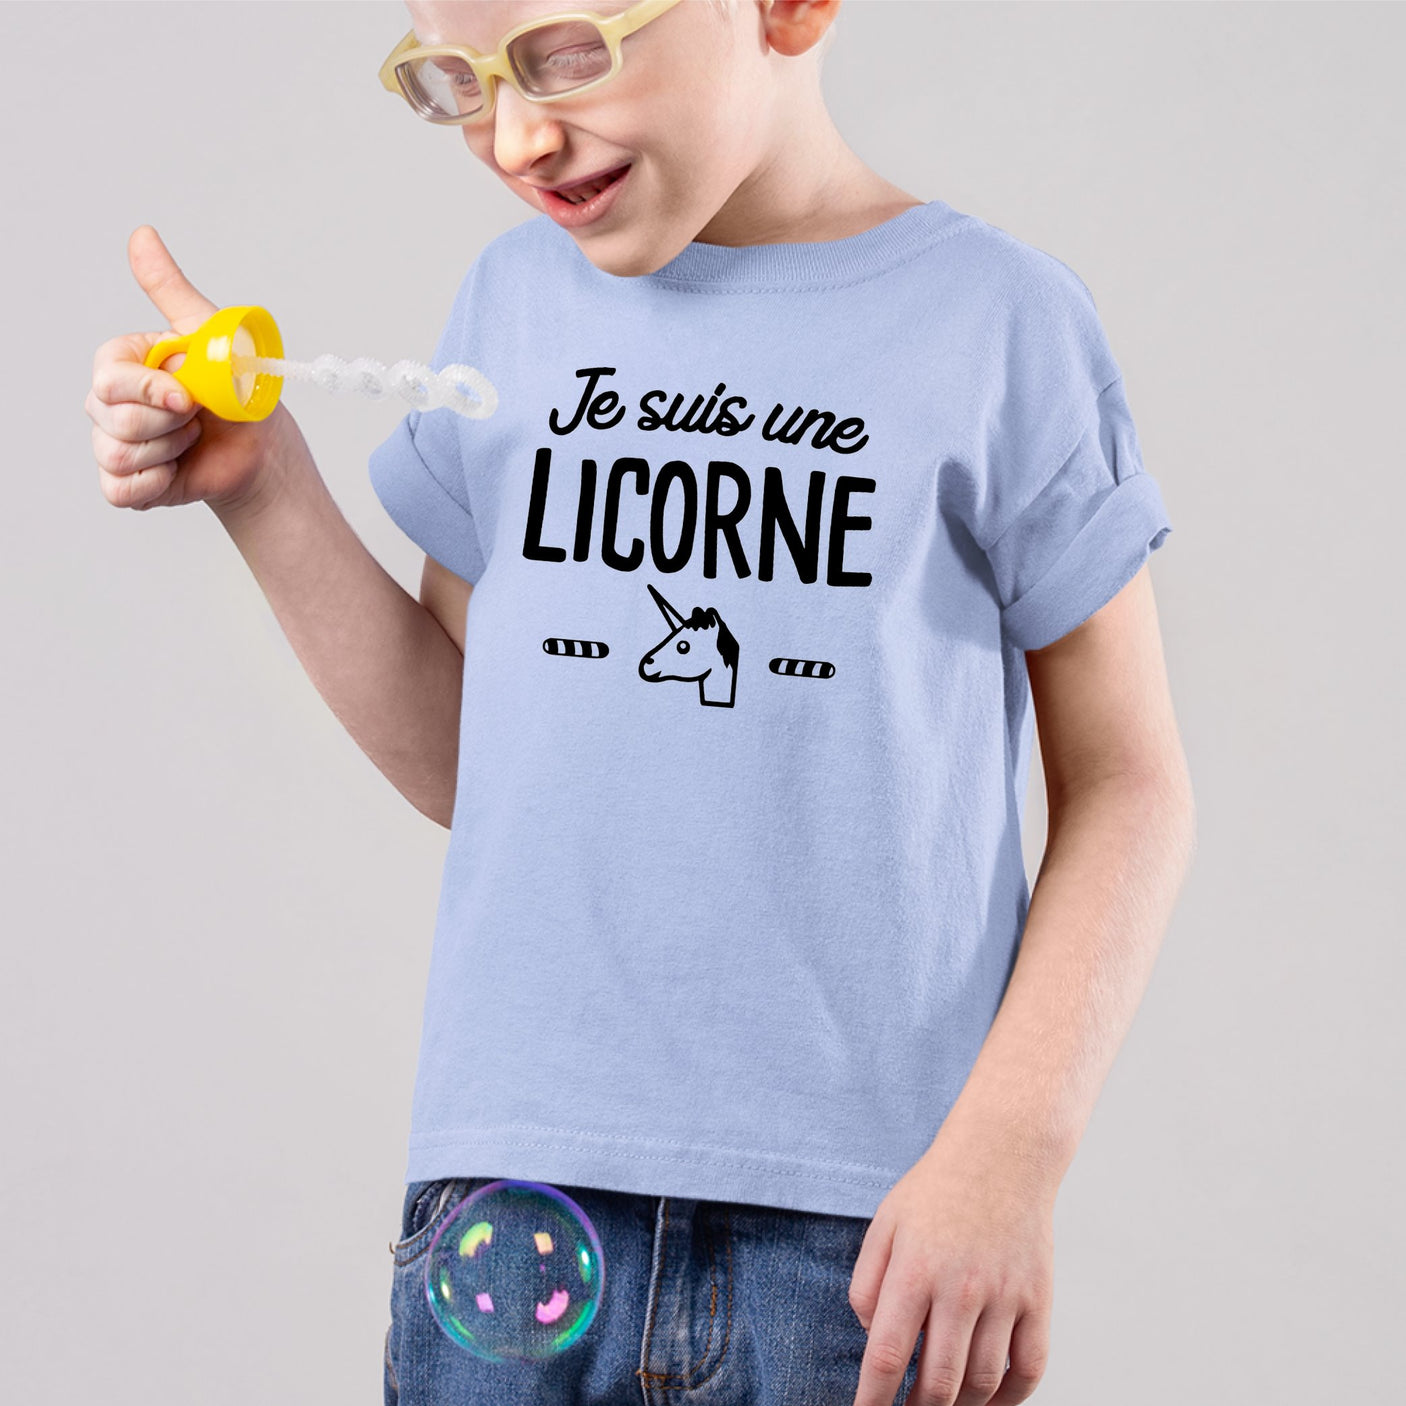 Joyeux anniversaire fille licorne (8 ans)' T-shirt Enfant